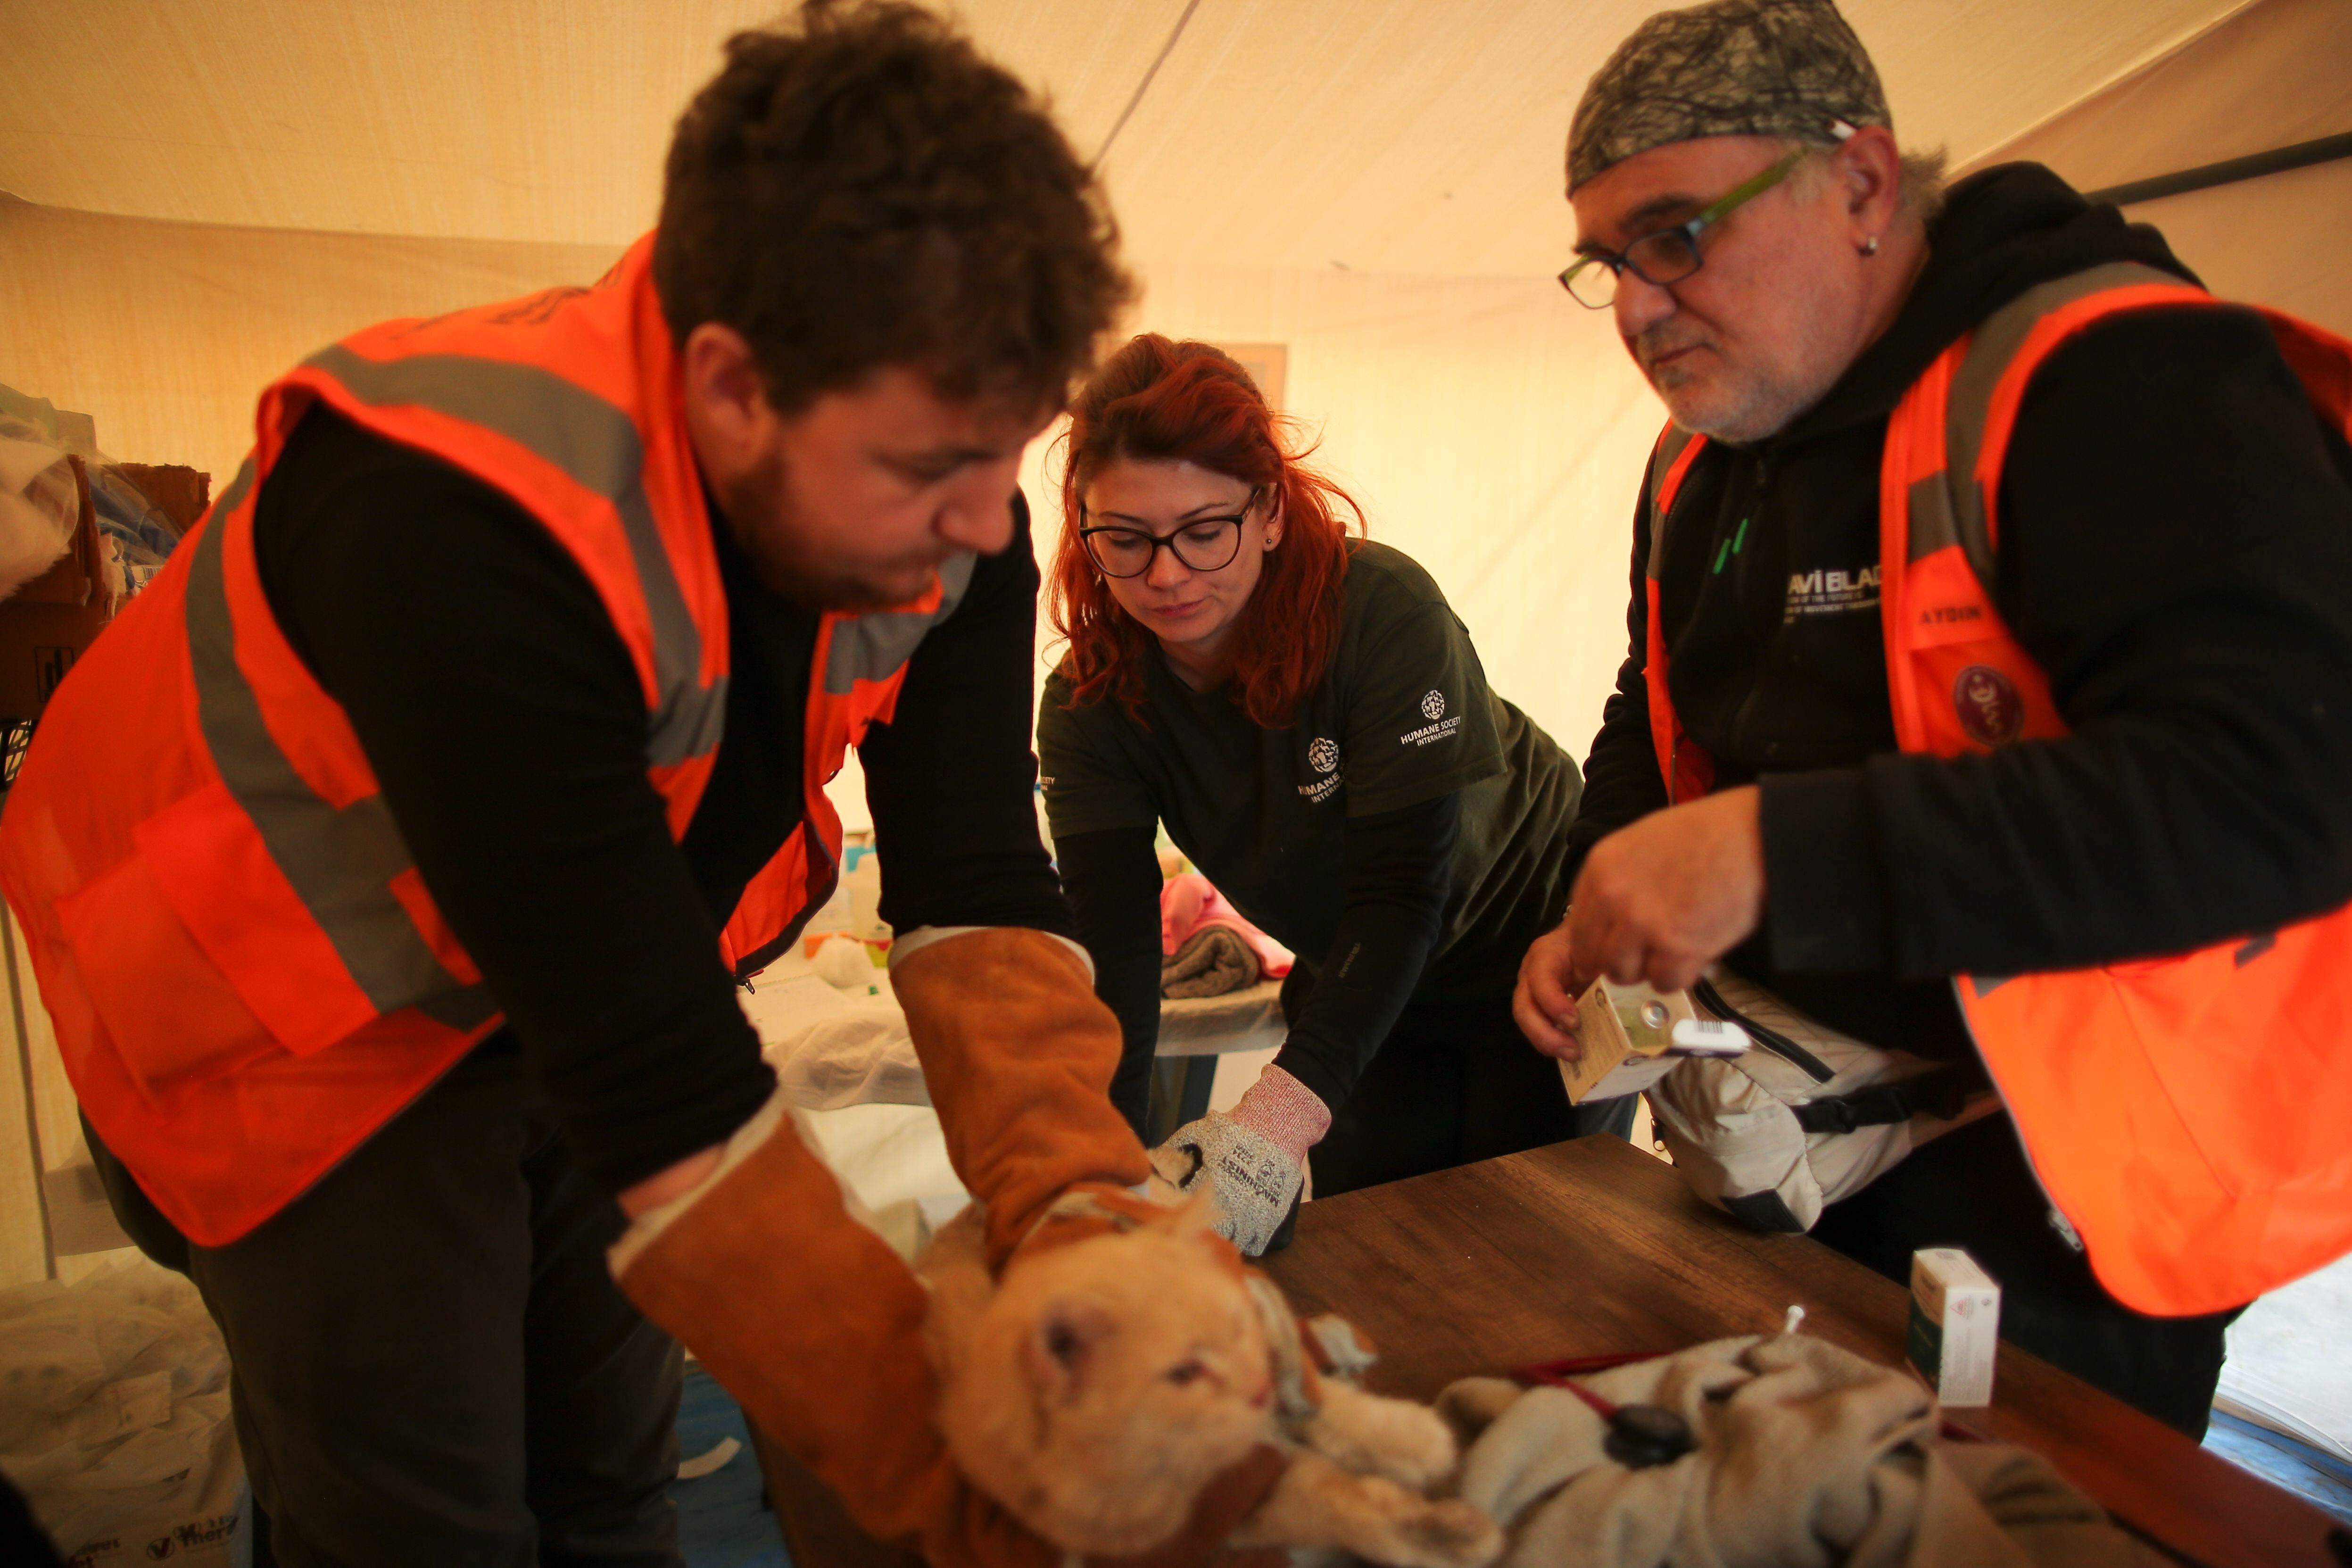 Los animales más heridos son trasladados a hospitales veterinarios de campaña. La tica Andrea Induni (atrás) es una de las que apoya en el proceso. Fotografía: Emrah Gurel/AP Images for HSI